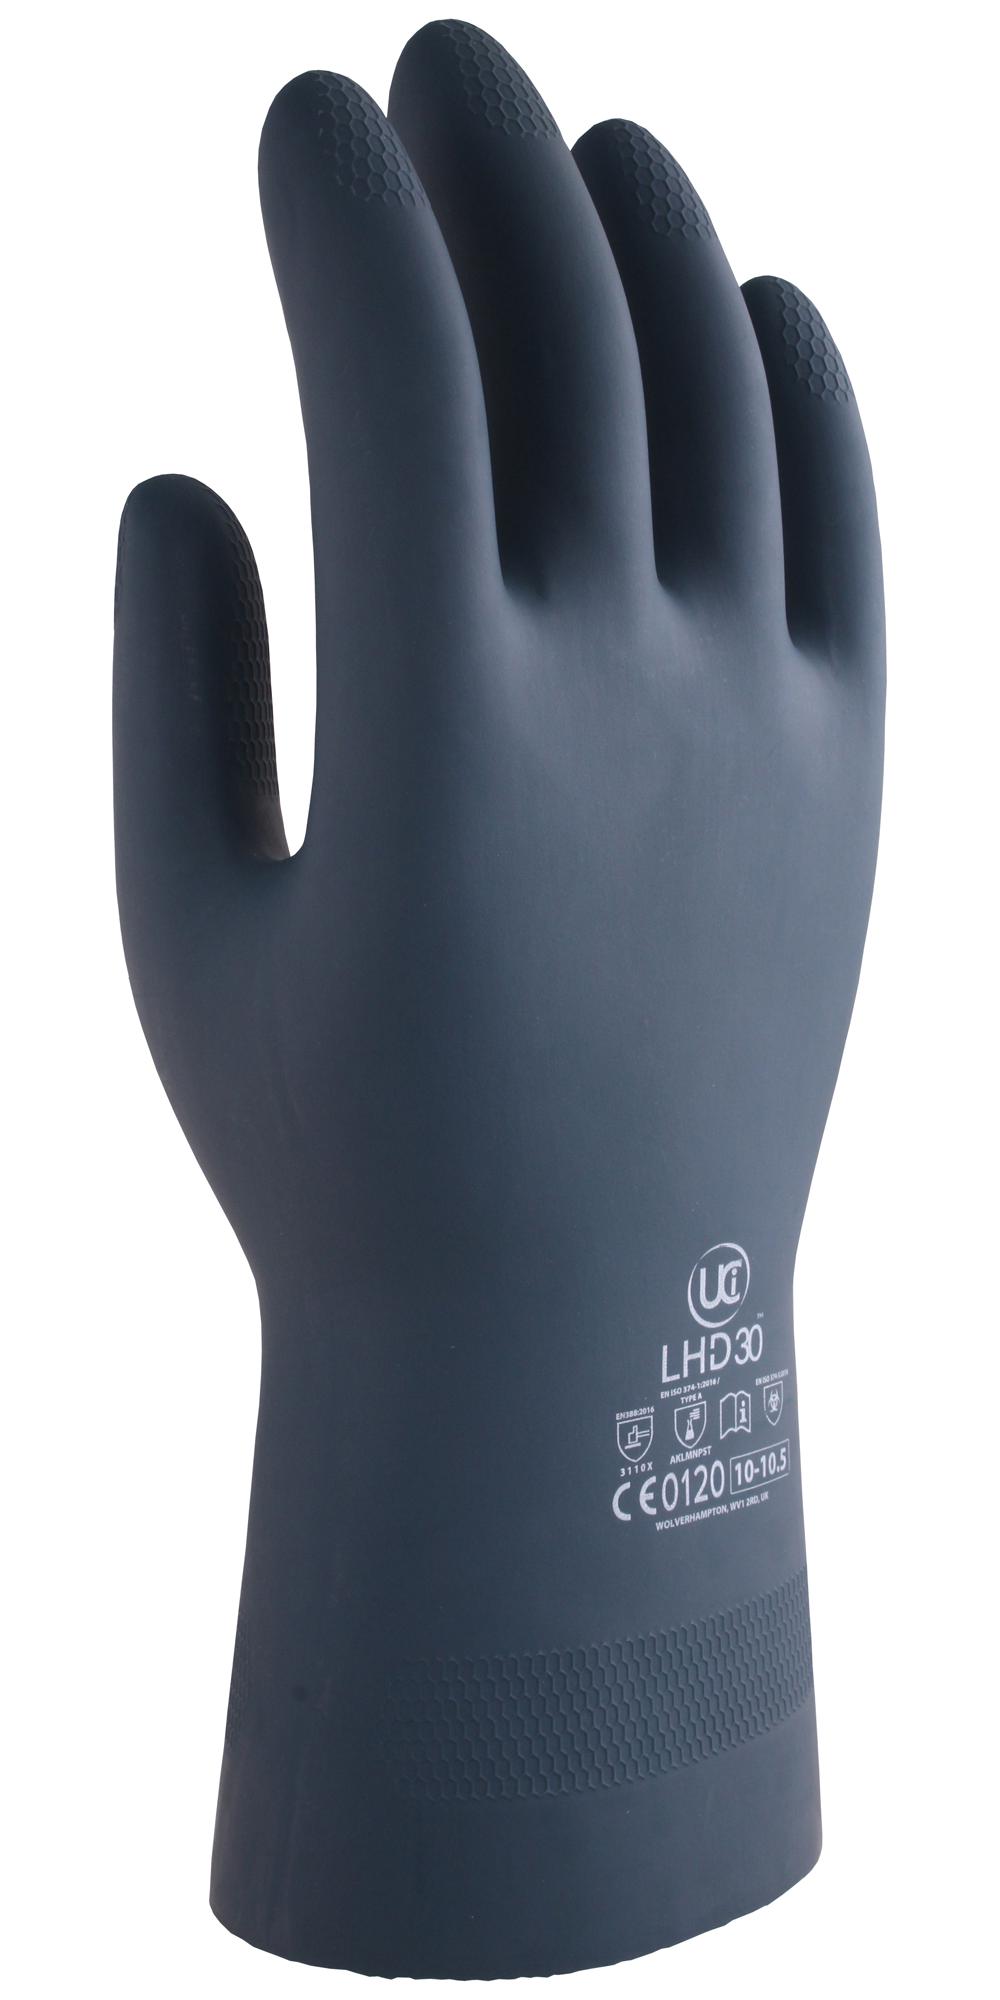 Uci G/lhd30/bk/08 Gloves, Rubber/neoprene, Black, M